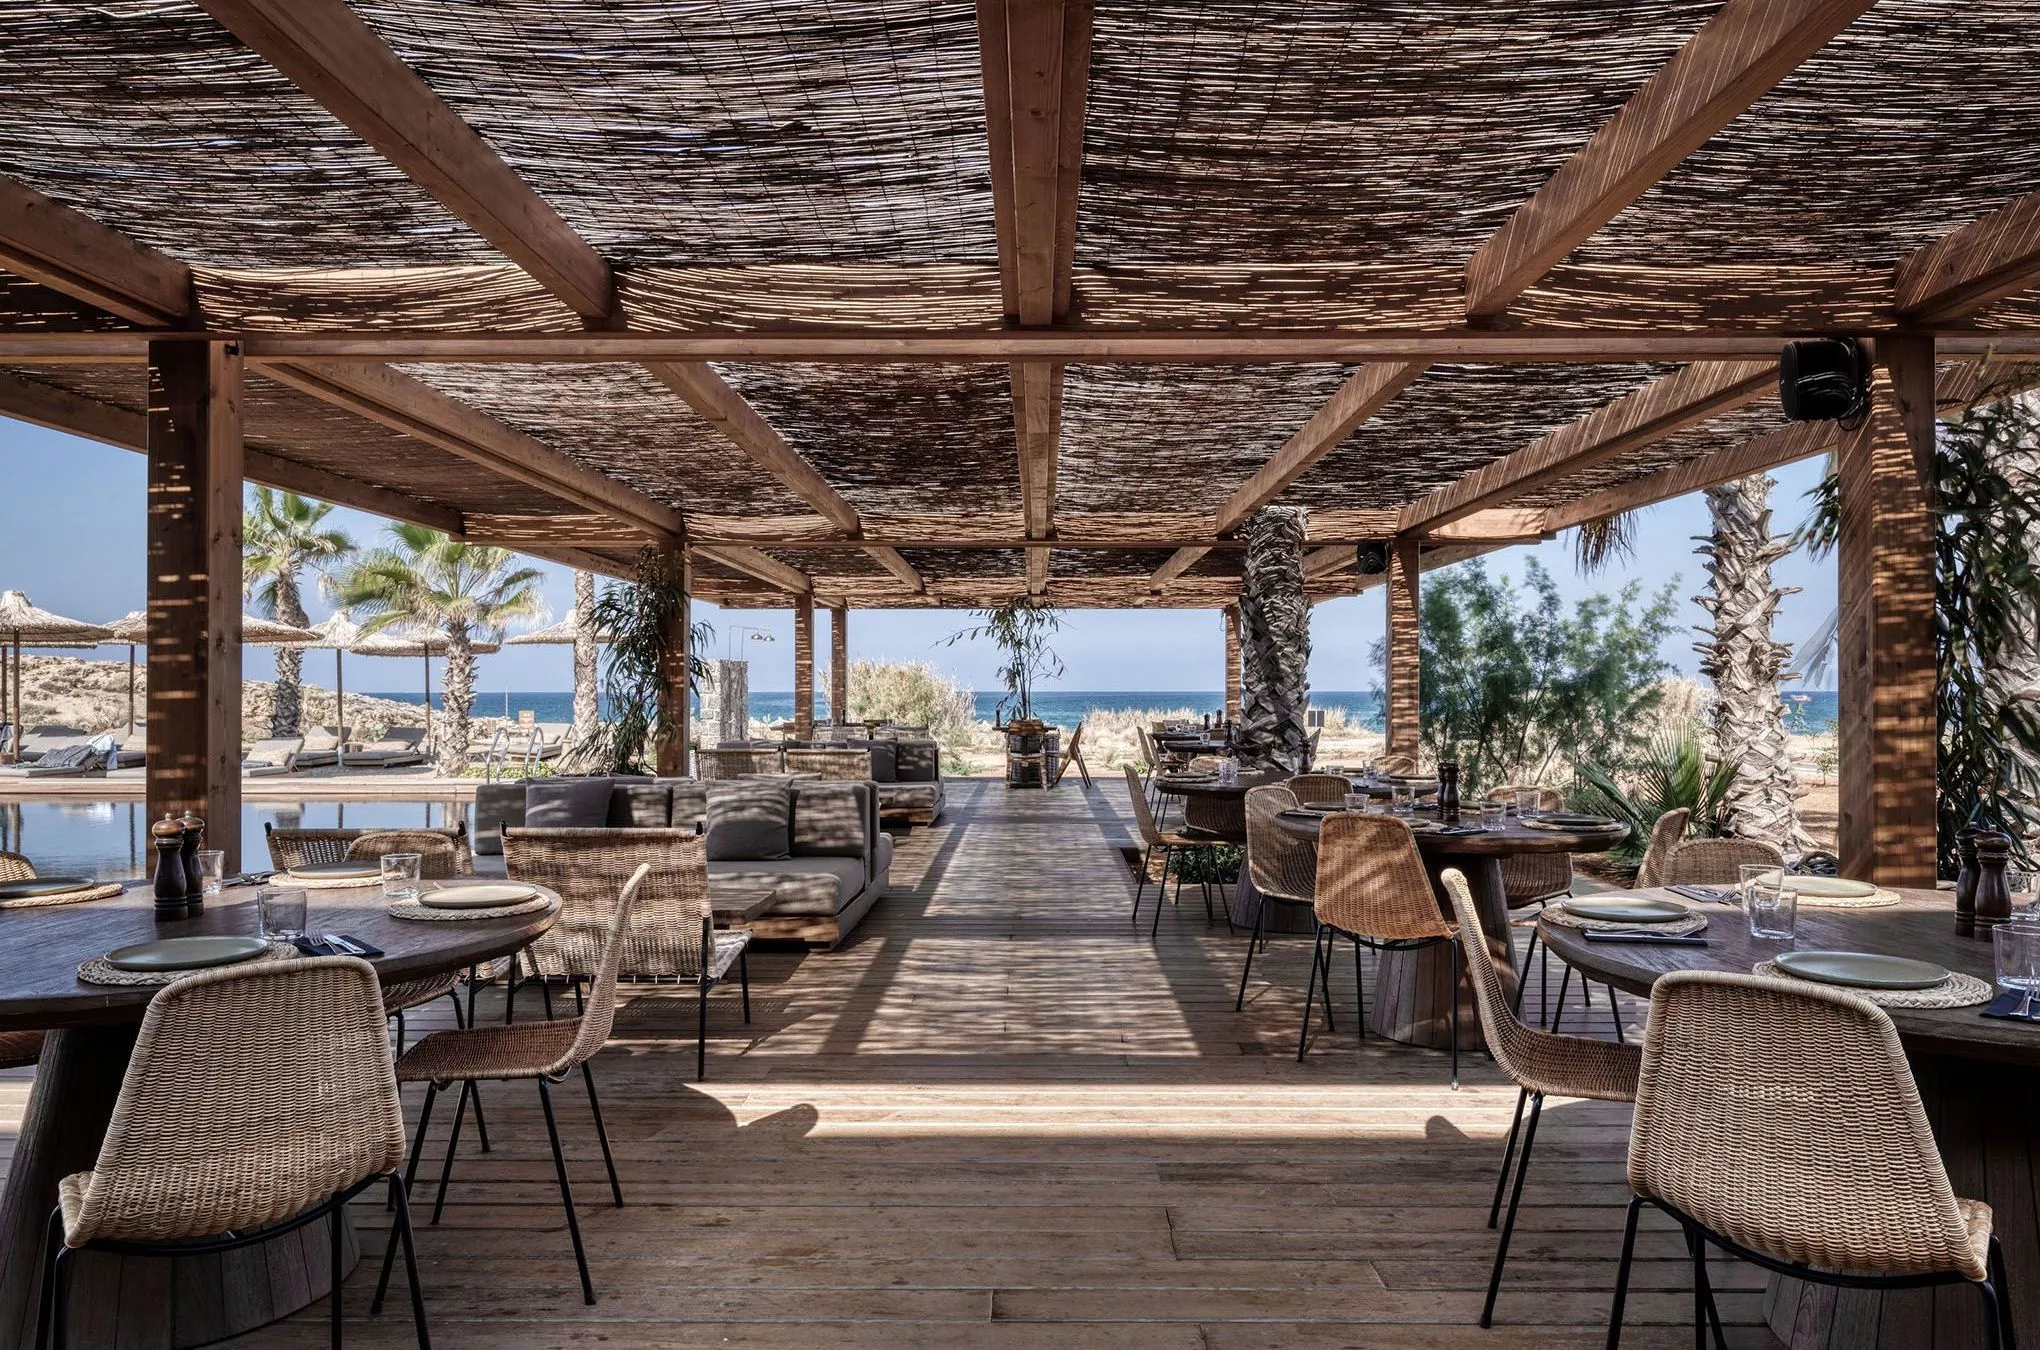 Mediterrane Küche nach traditionell kretischen Rezepten kommt im Beach House Restaurant auf den Tisch – auf Wunsch auch glutenfrei